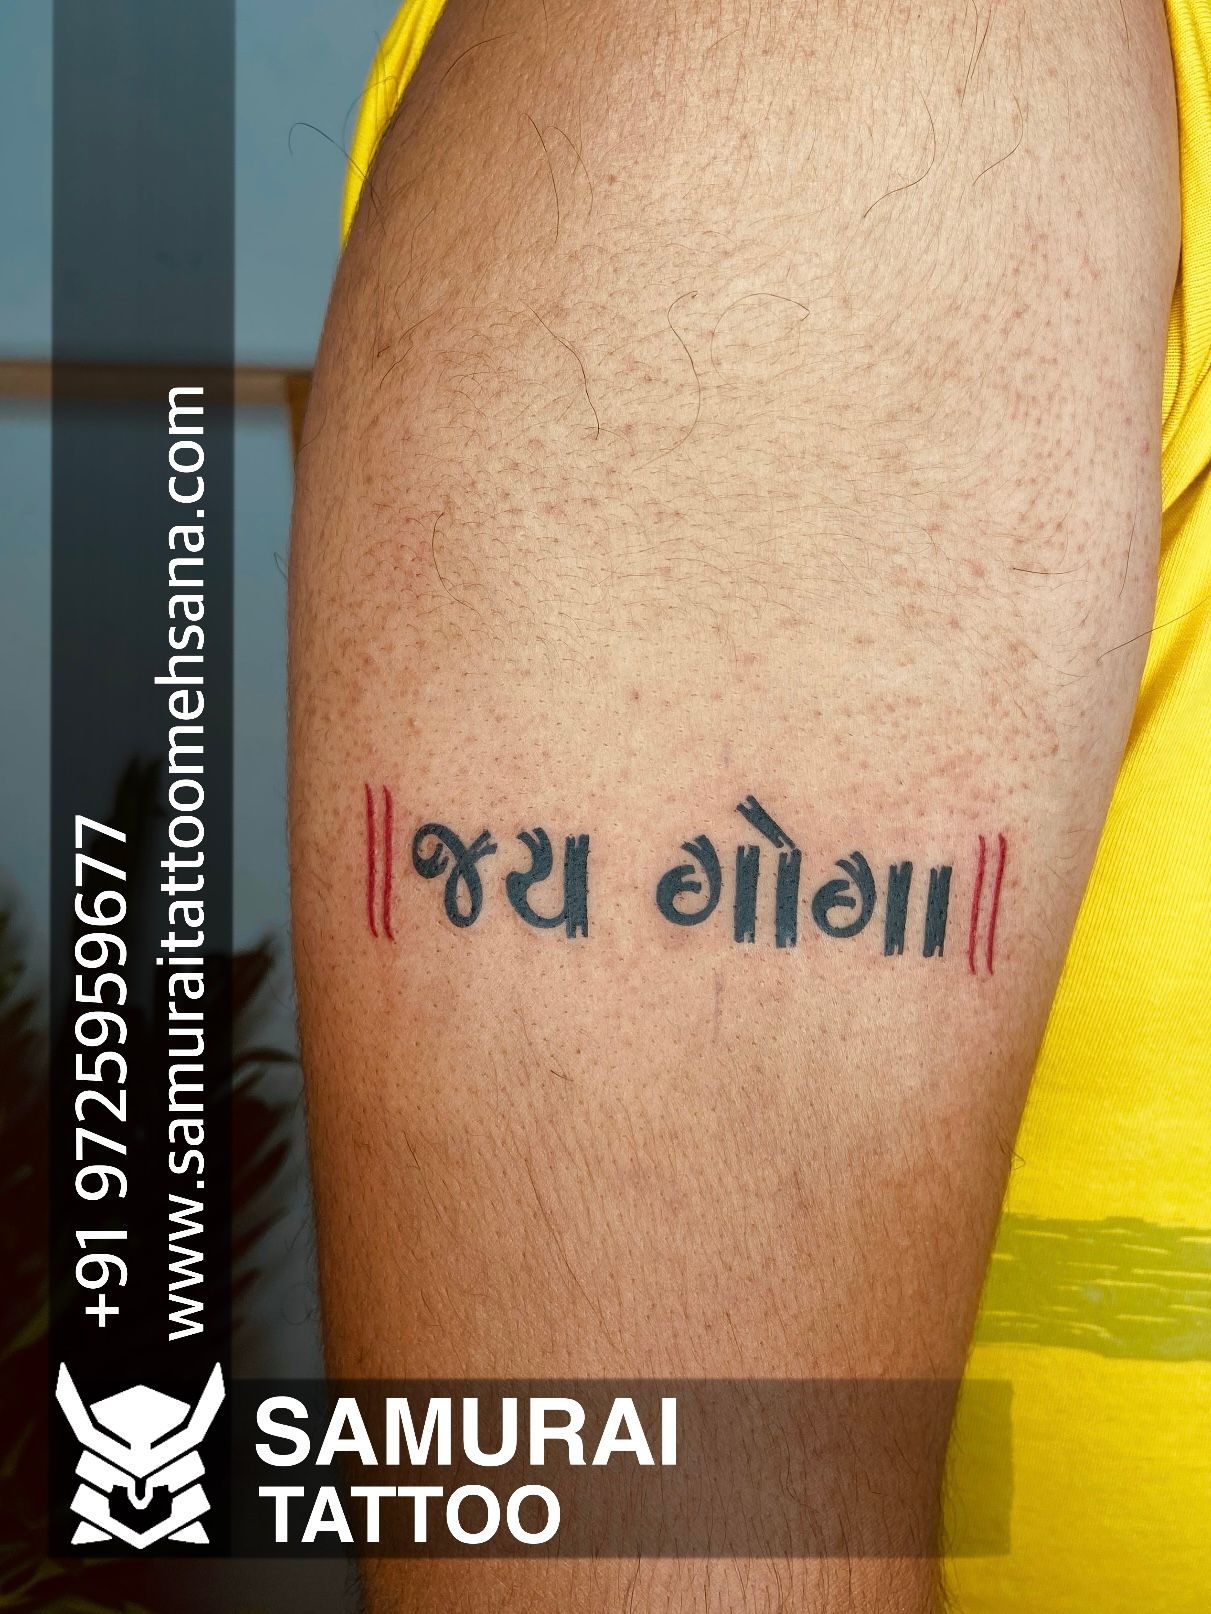 Goga maharaj tattoo Goga tattoo Jay goga tattoo Jay goga maharaj tattoo   Tattoos Fish tattoos Jesus fish tattoo